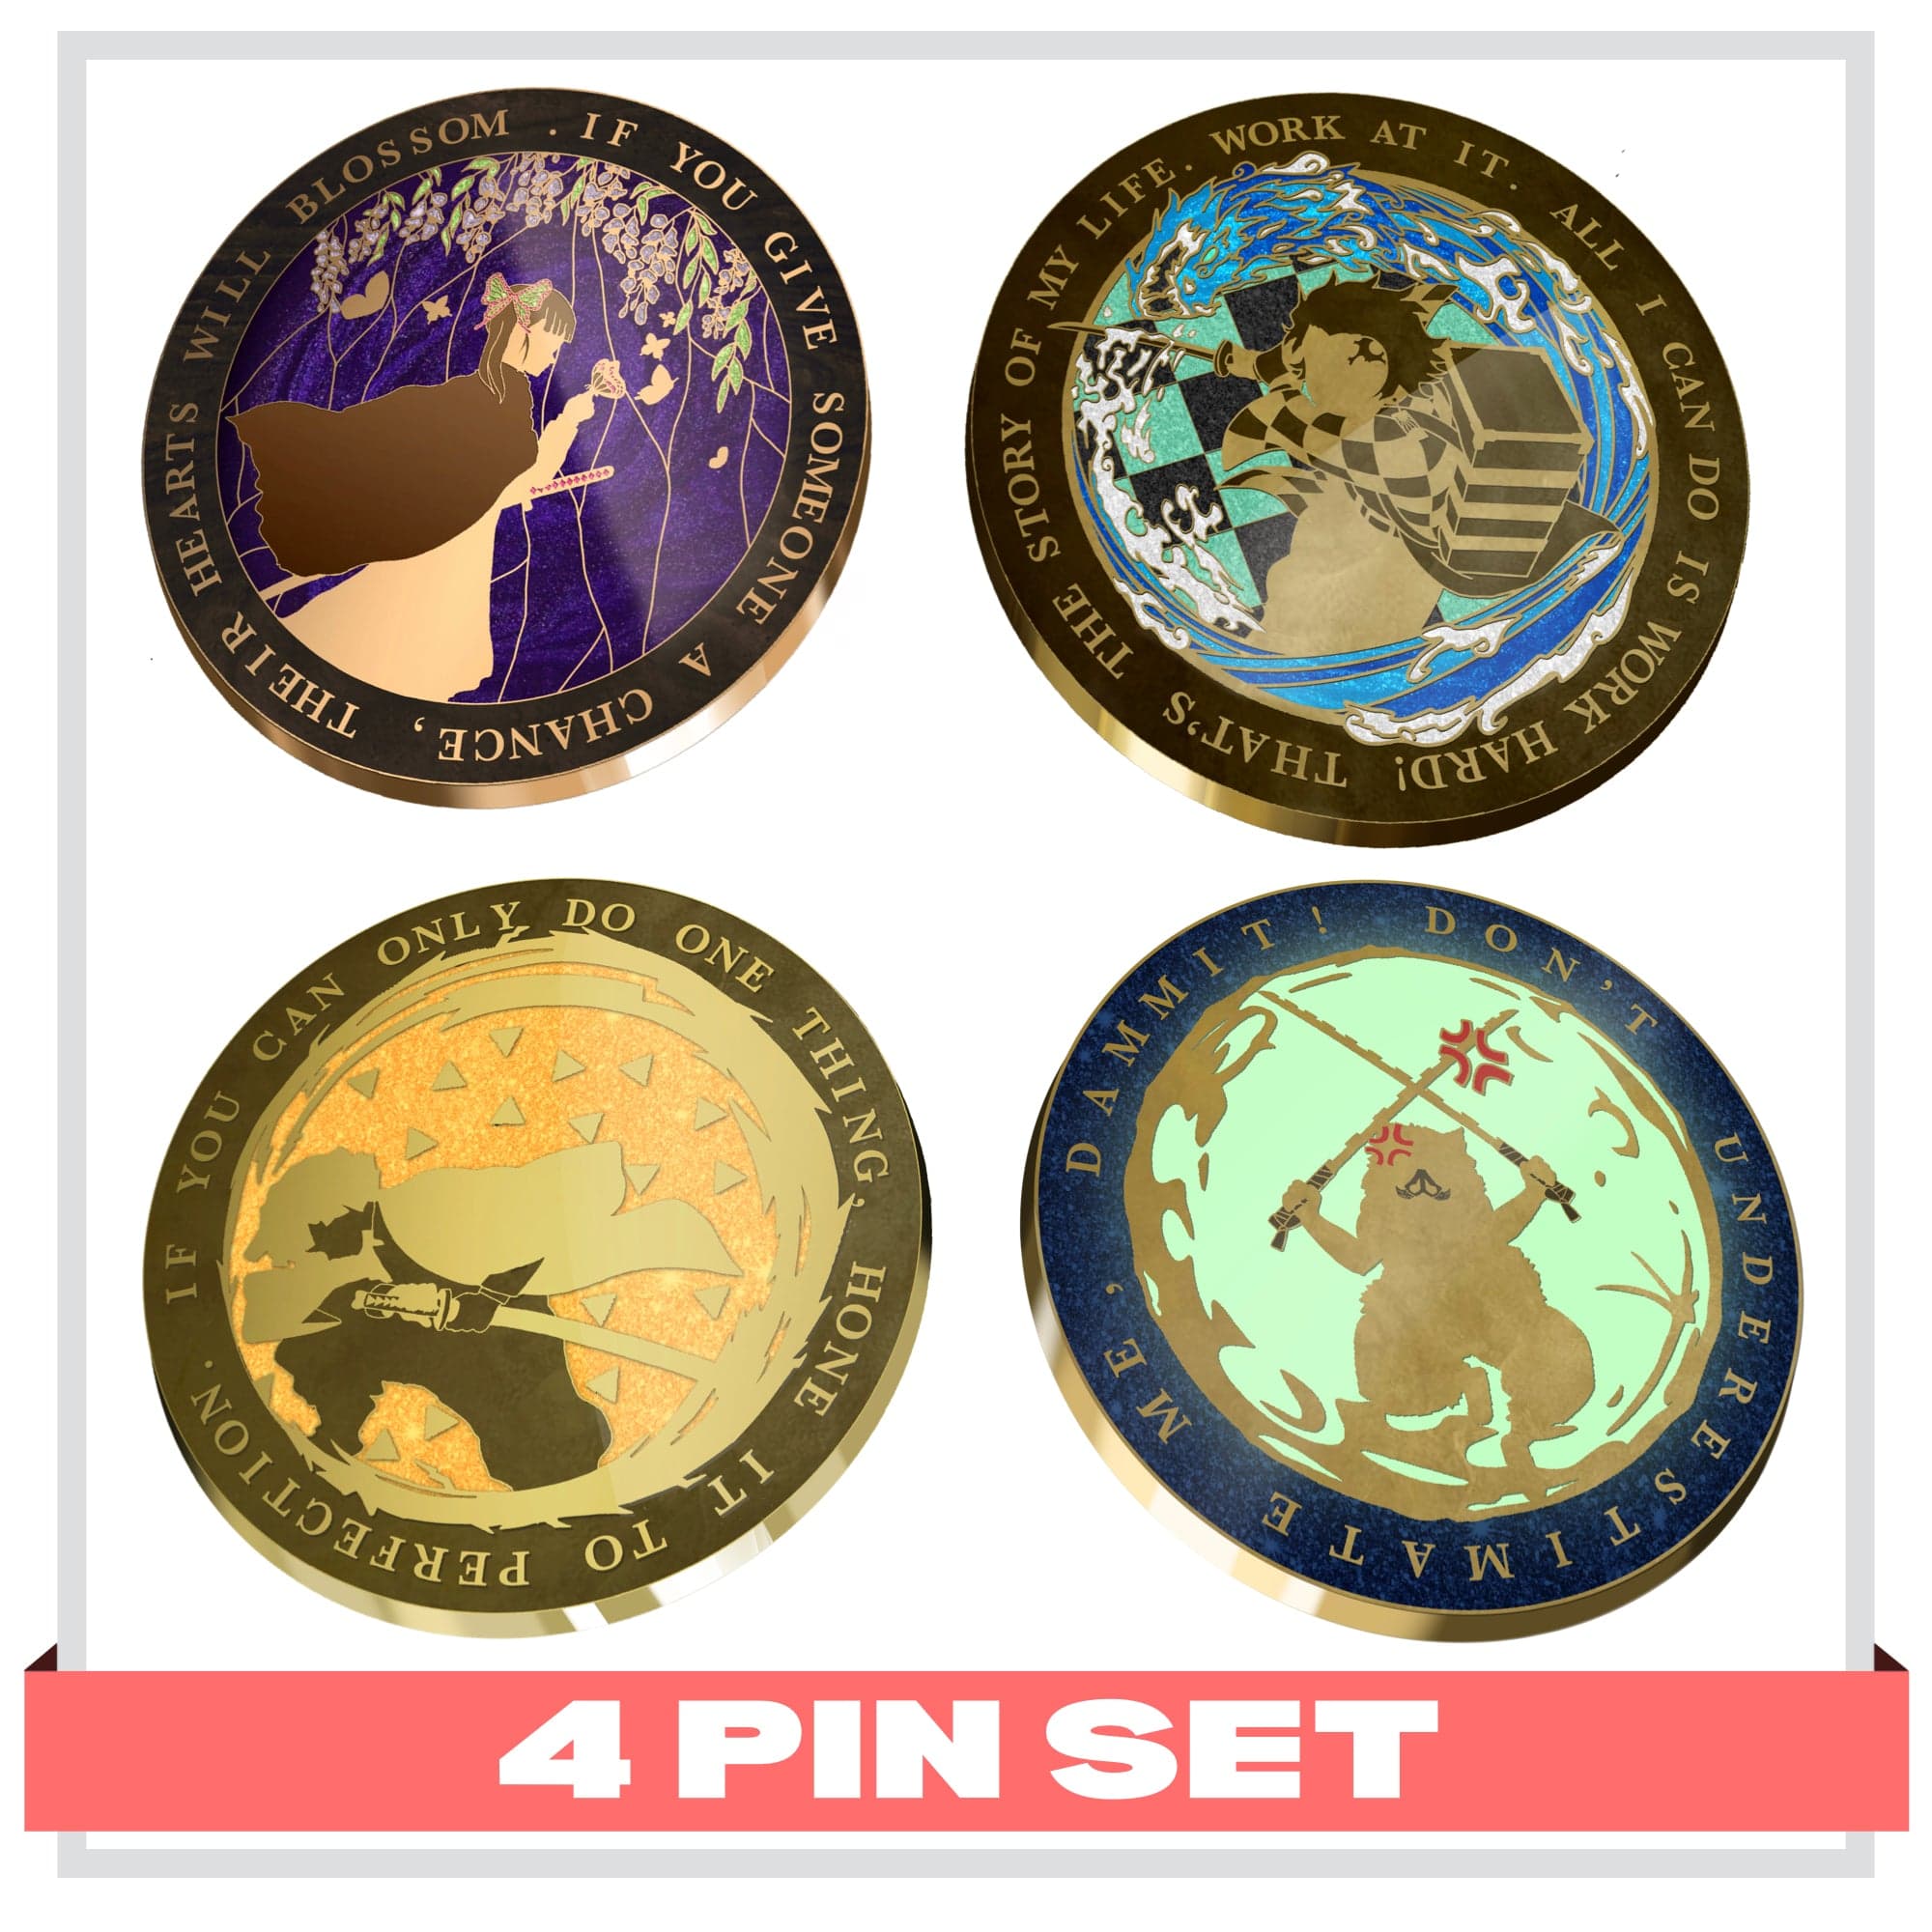 pinbuds 4 Slayer Pin set Flower Breathing Demon Warrior Pin